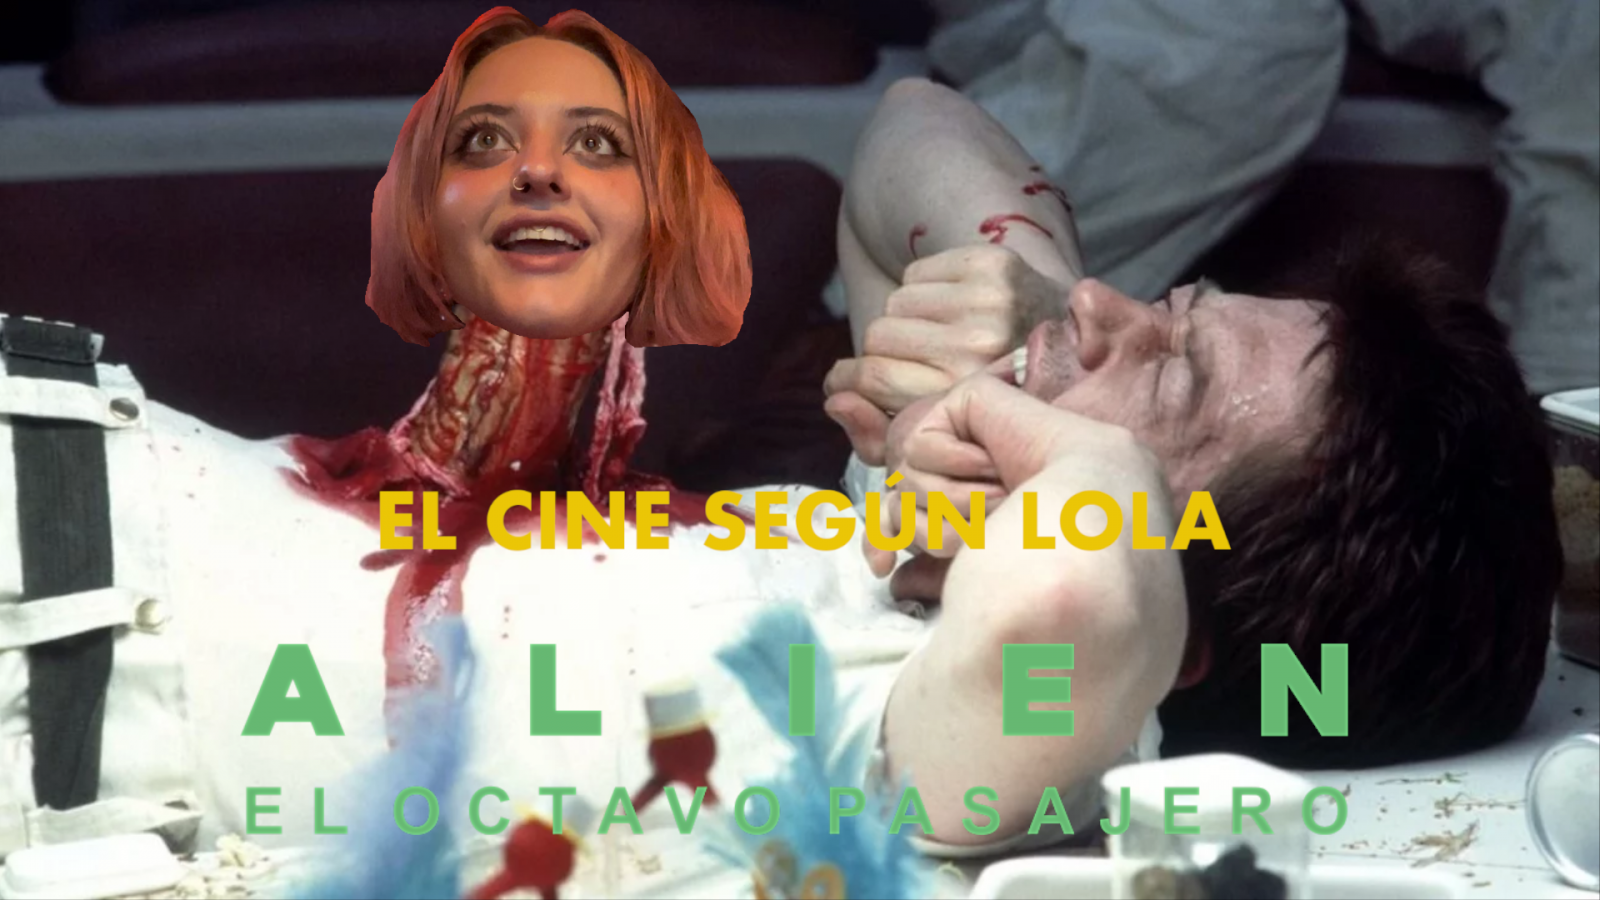 El cine seg�n Lola - Alien: el octavo pasajero - 27/05/2023 - Ver ahora